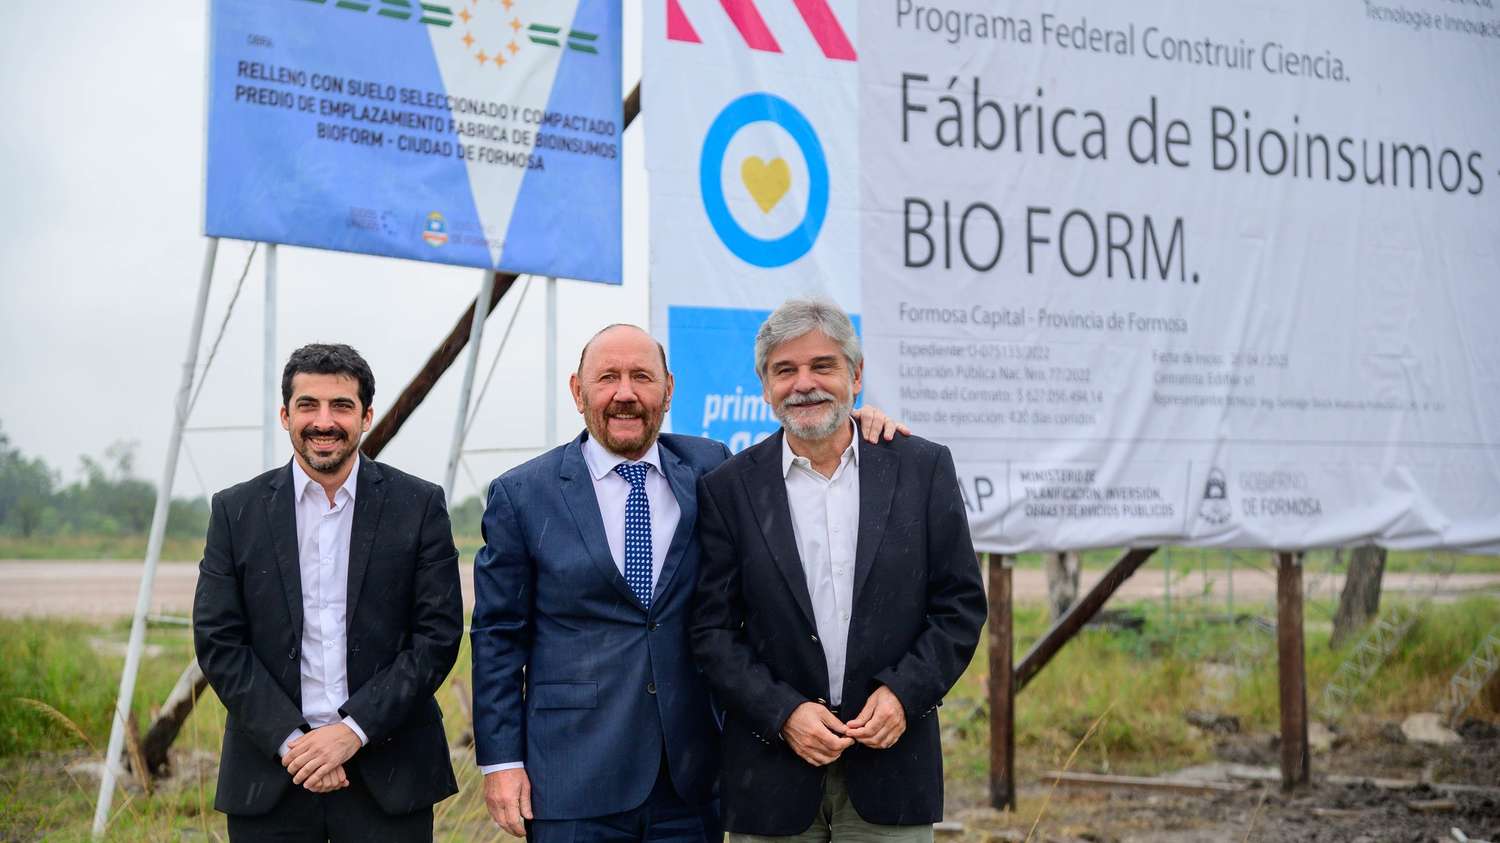 Junto a Daniel Filmus, el Gobernador firmó el convenio para la construcción de la planta de bioinsumos